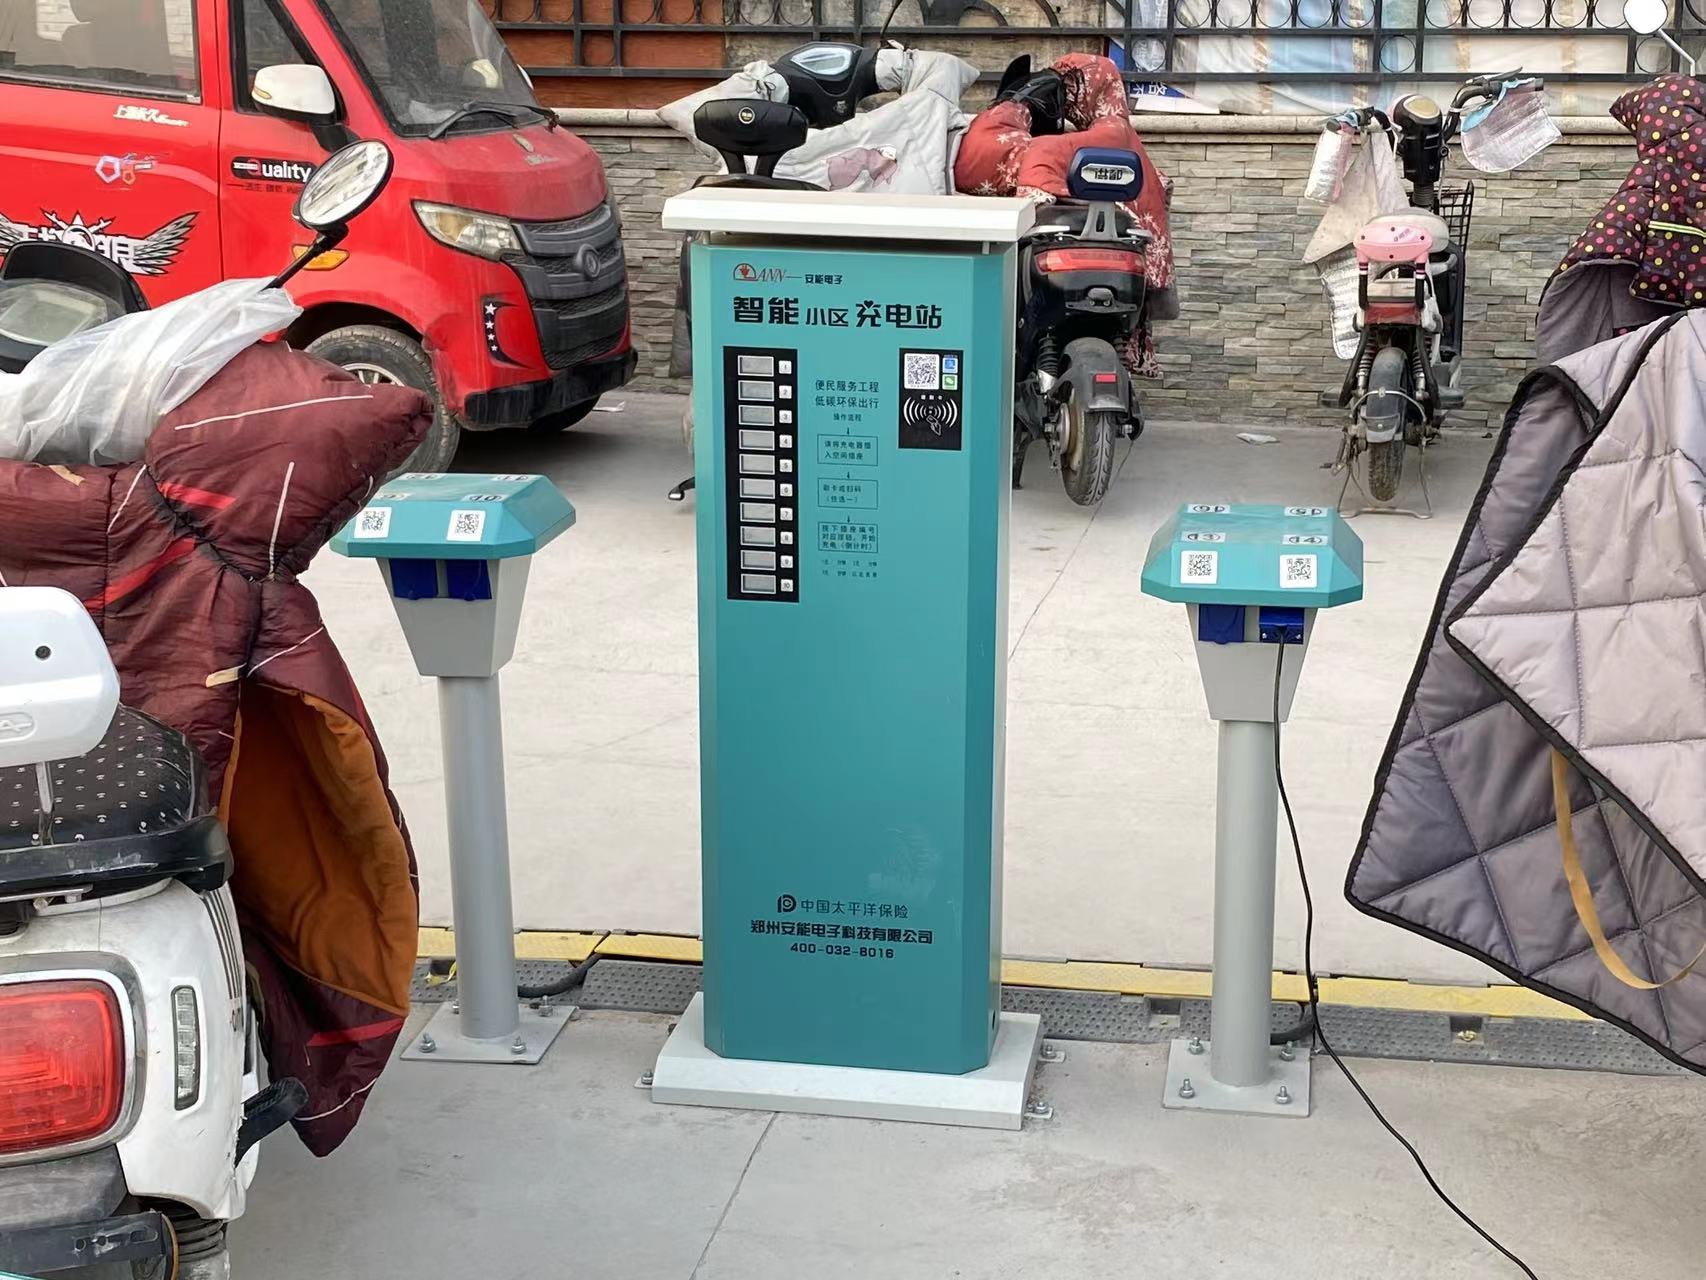 加速充电桩“自由” 苏宁易购帮客与20家车企建立合作关系